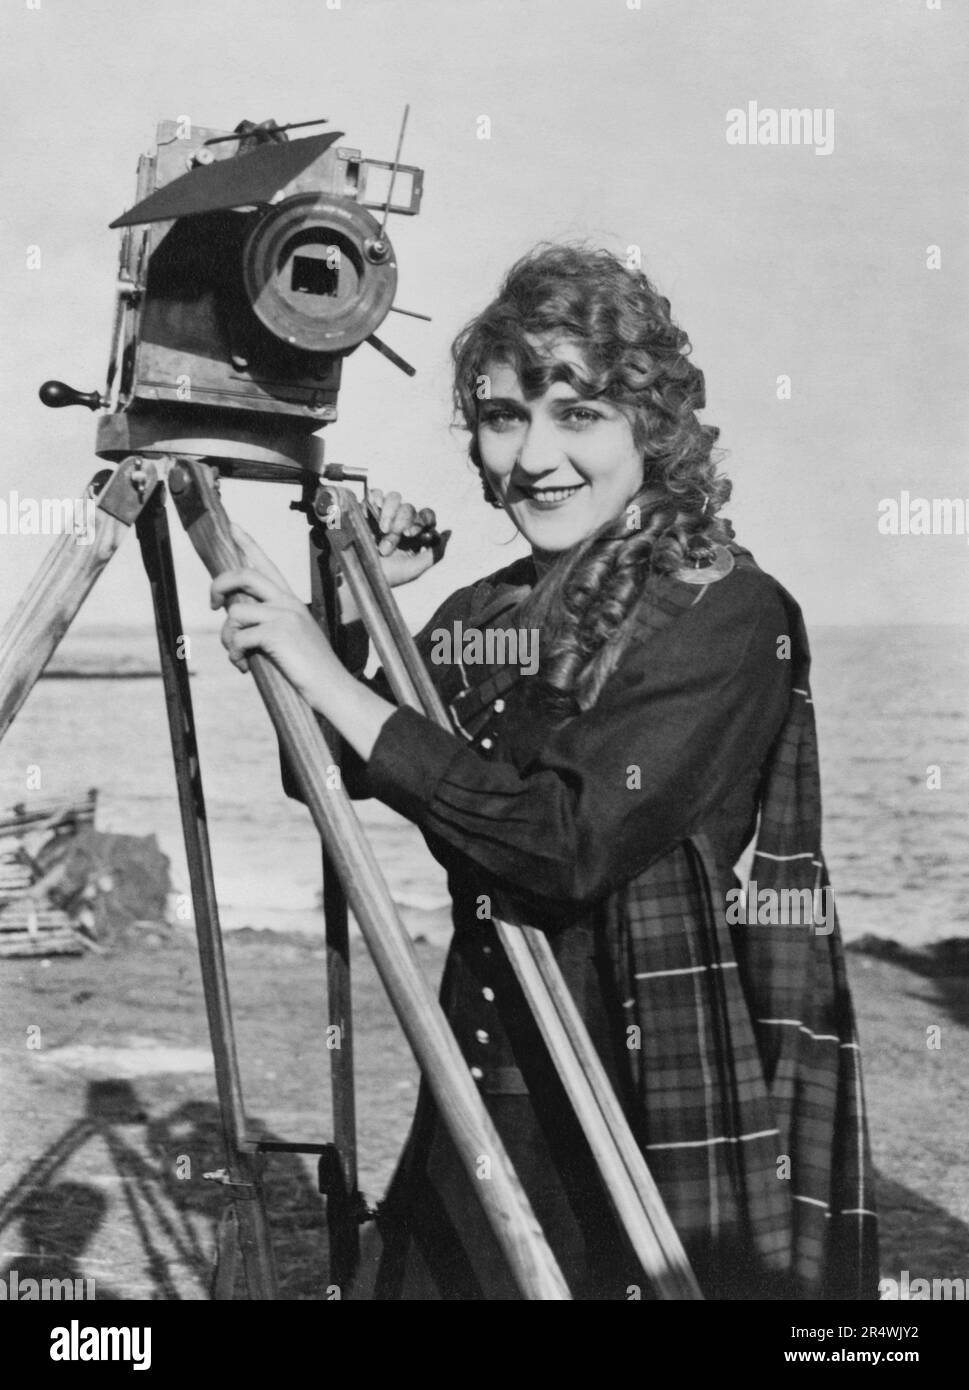 Photographie de Mary Pickford (1892-1979) actrice de cinéma canado-américain, co-fondateur du film studio United Artists et l'un des 36 fondateurs de l'Academy of Motion Picture Arts and Sciences. Datée 1930 Banque D'Images